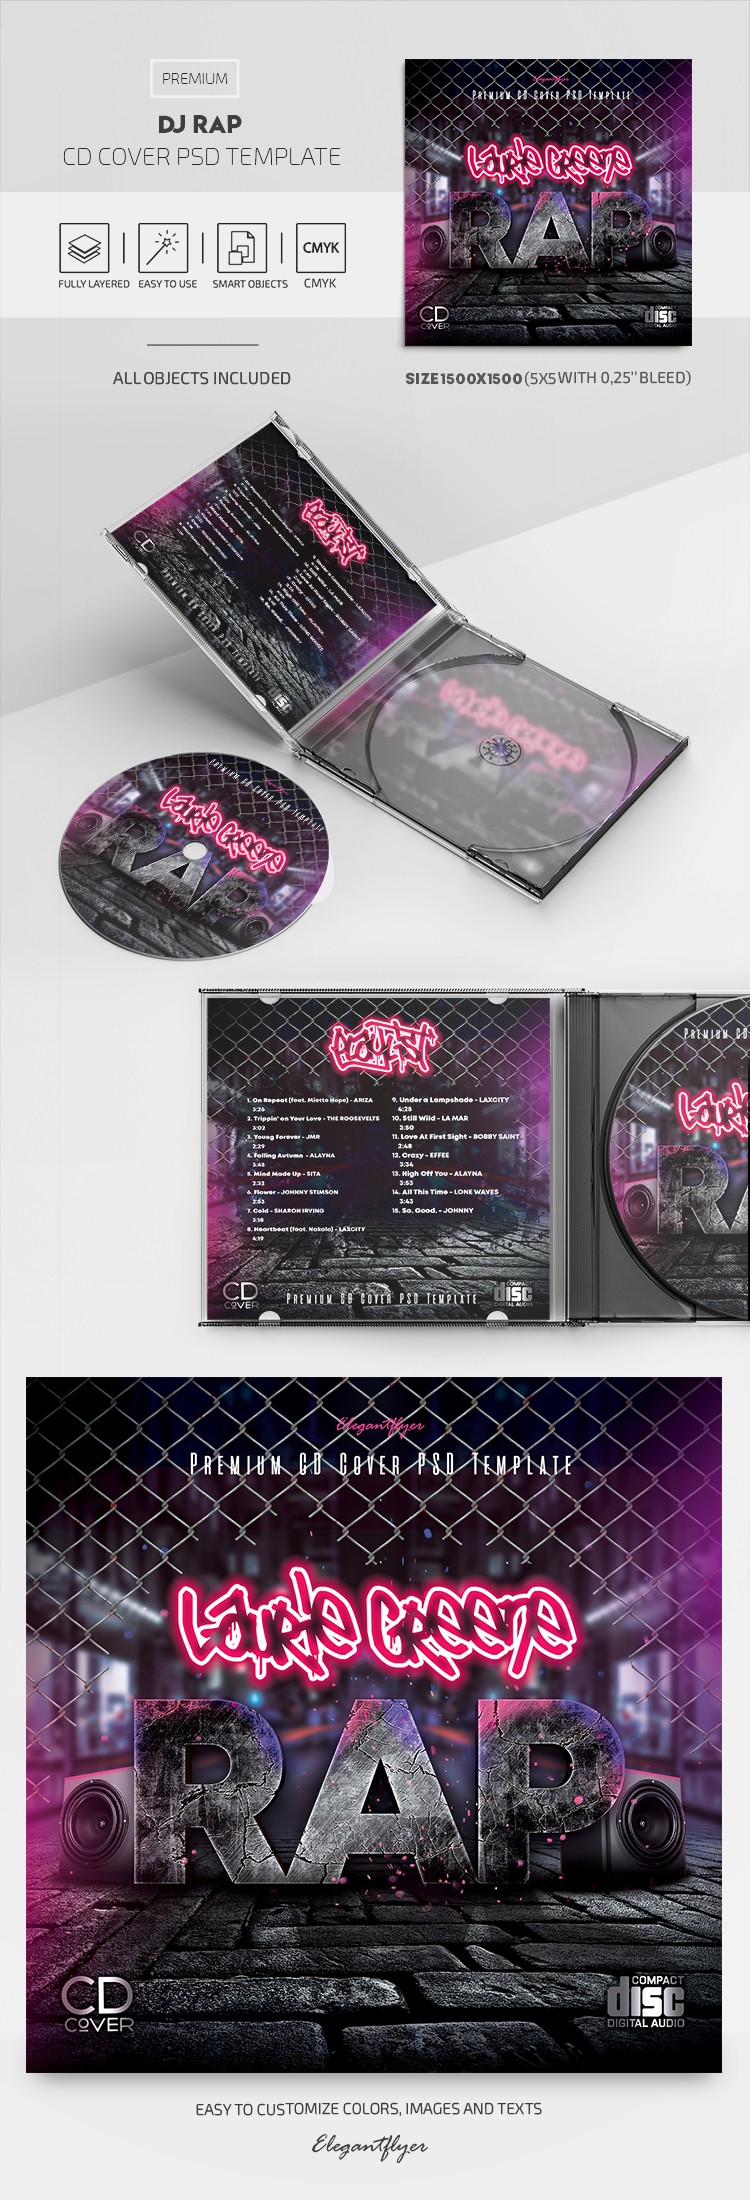 DJ Rap CD封面 by ElegantFlyer